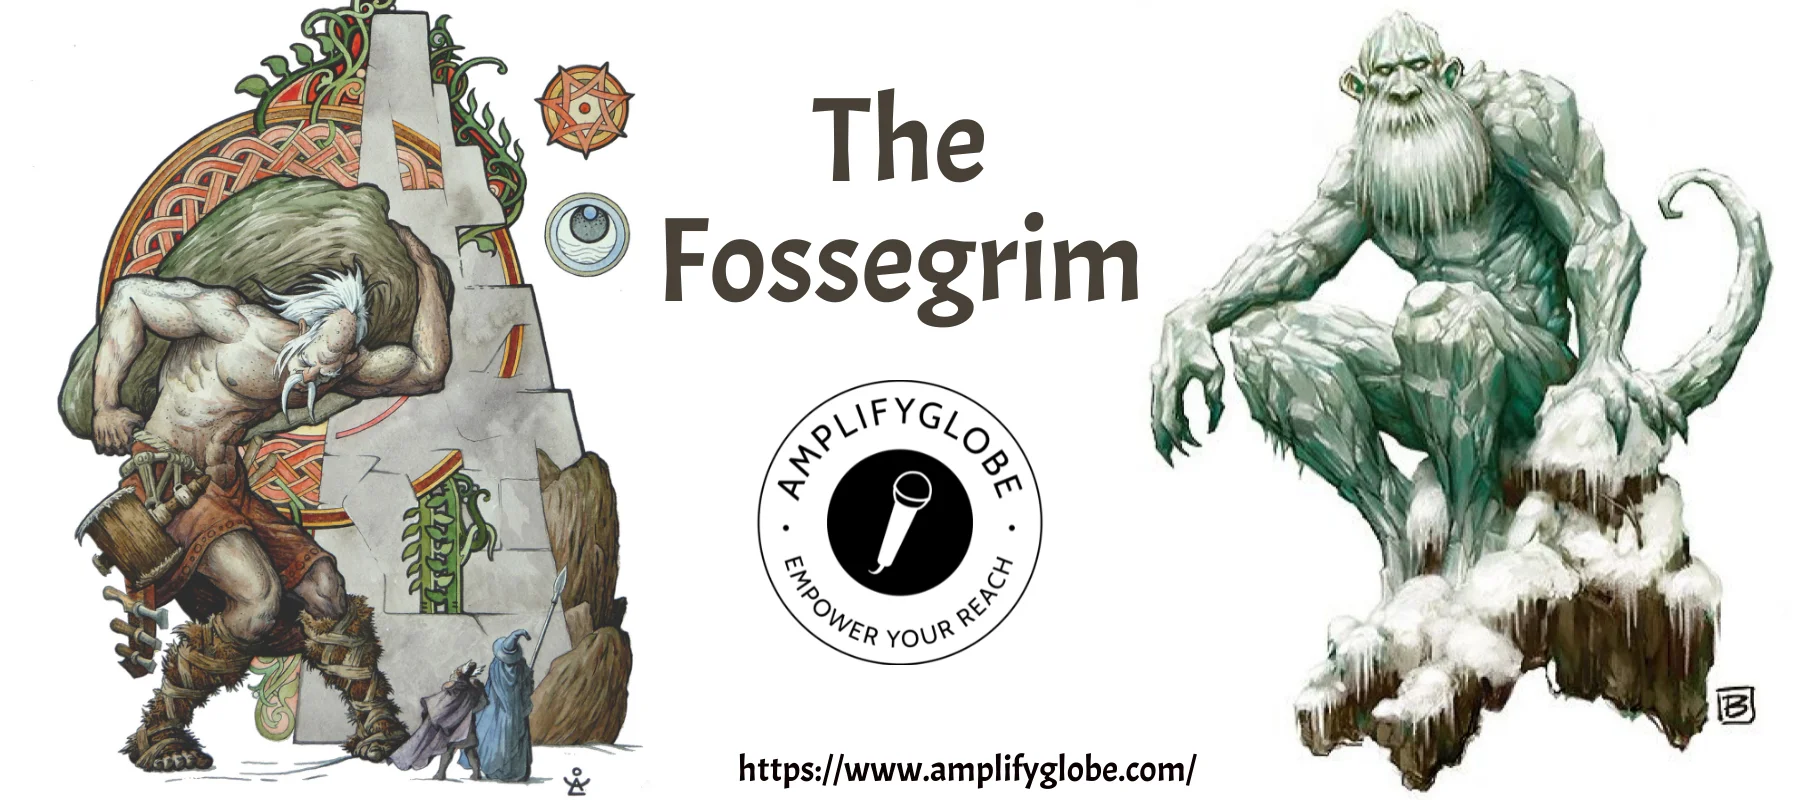 The fossegrim